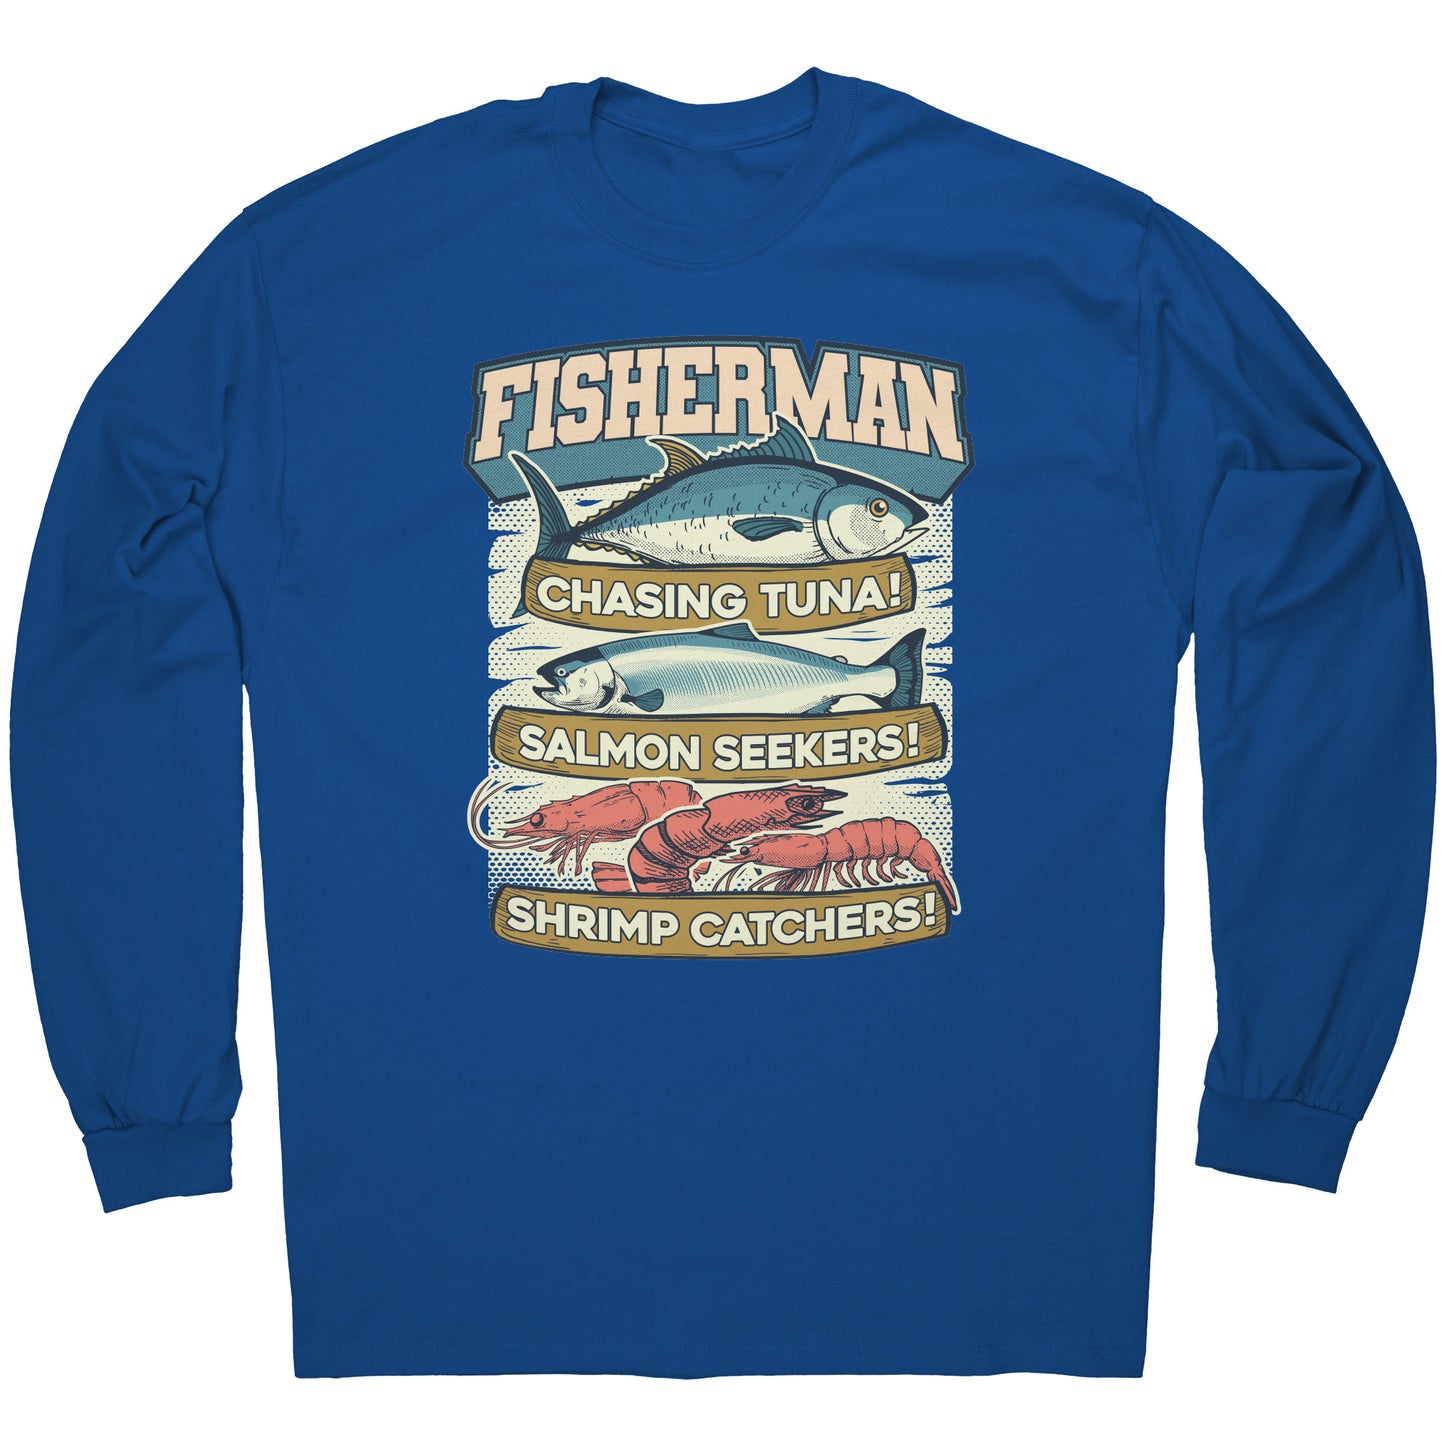 Buy Fisherman T-Shirt